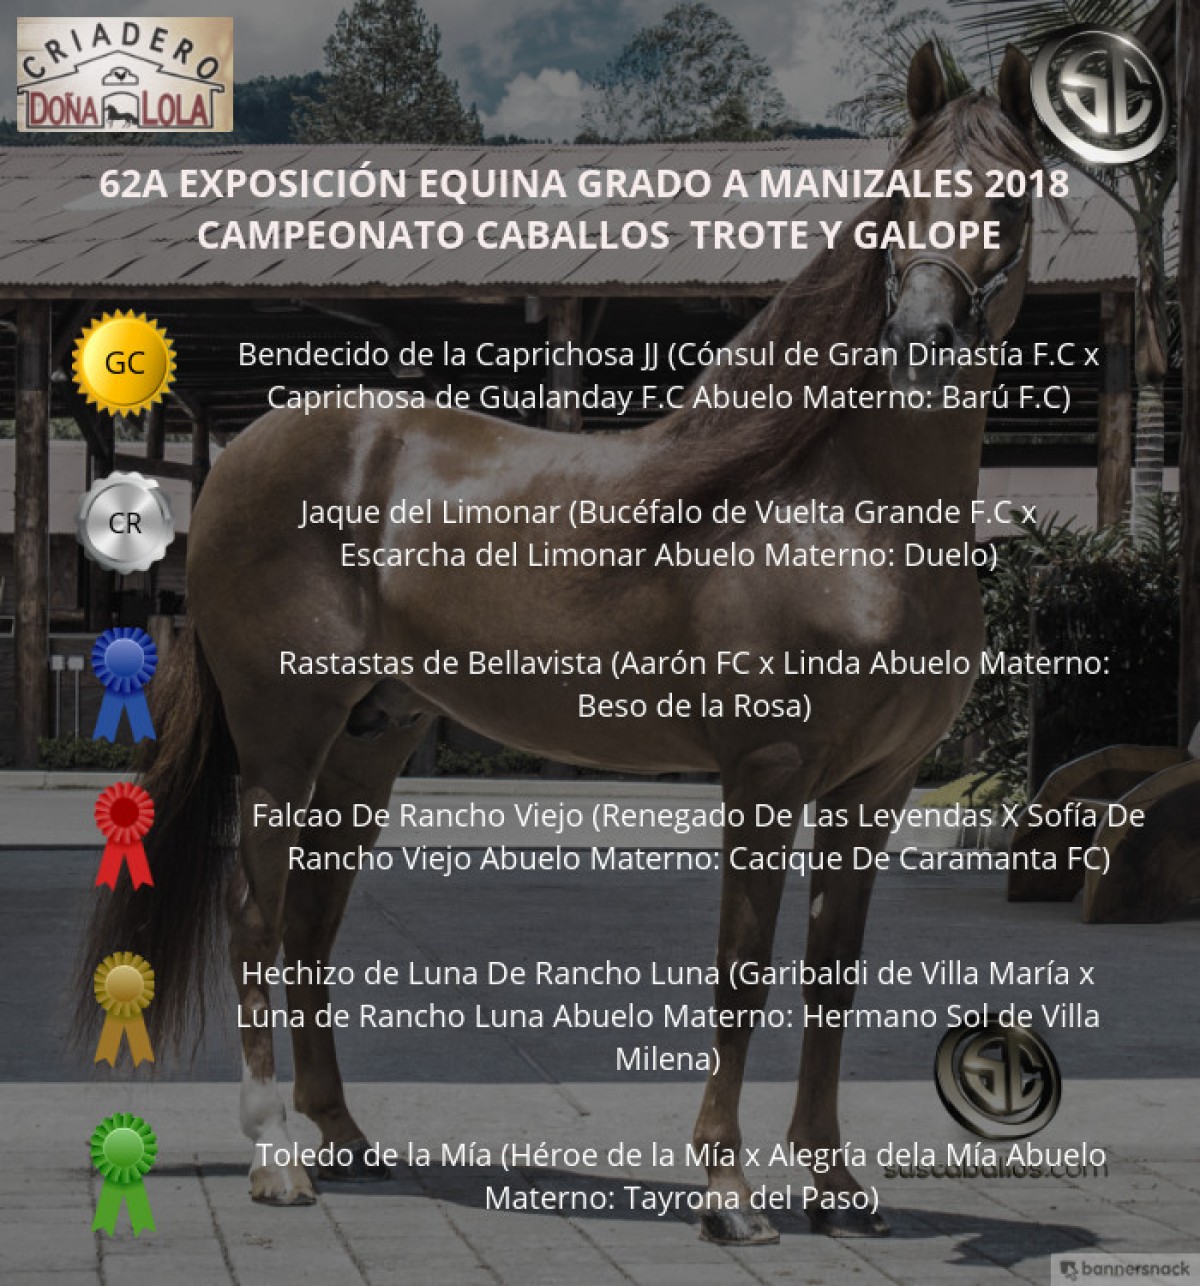 VÍDEO: Bendecido Campeón, Jaque Reservado, Trote Y Galope, Manizales 2018